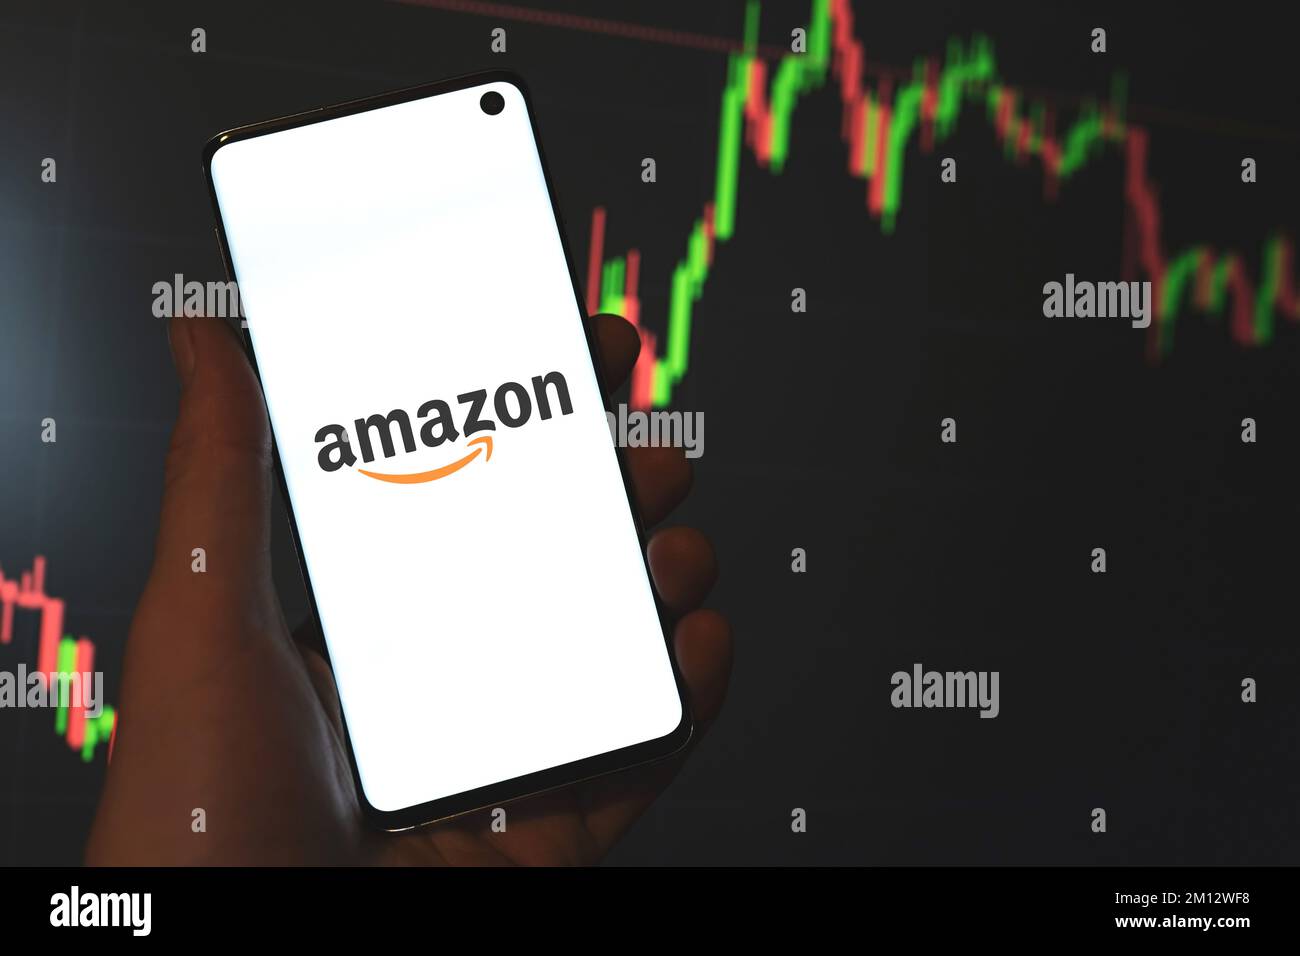 Amazon Inc.-Logo auf dem Telefonbildschirm in der Hand, Aktientabelle, Liniendiagramm, dunkler Hintergrund. Swansea, Großbritannien - 26. August 2021. Stockfoto